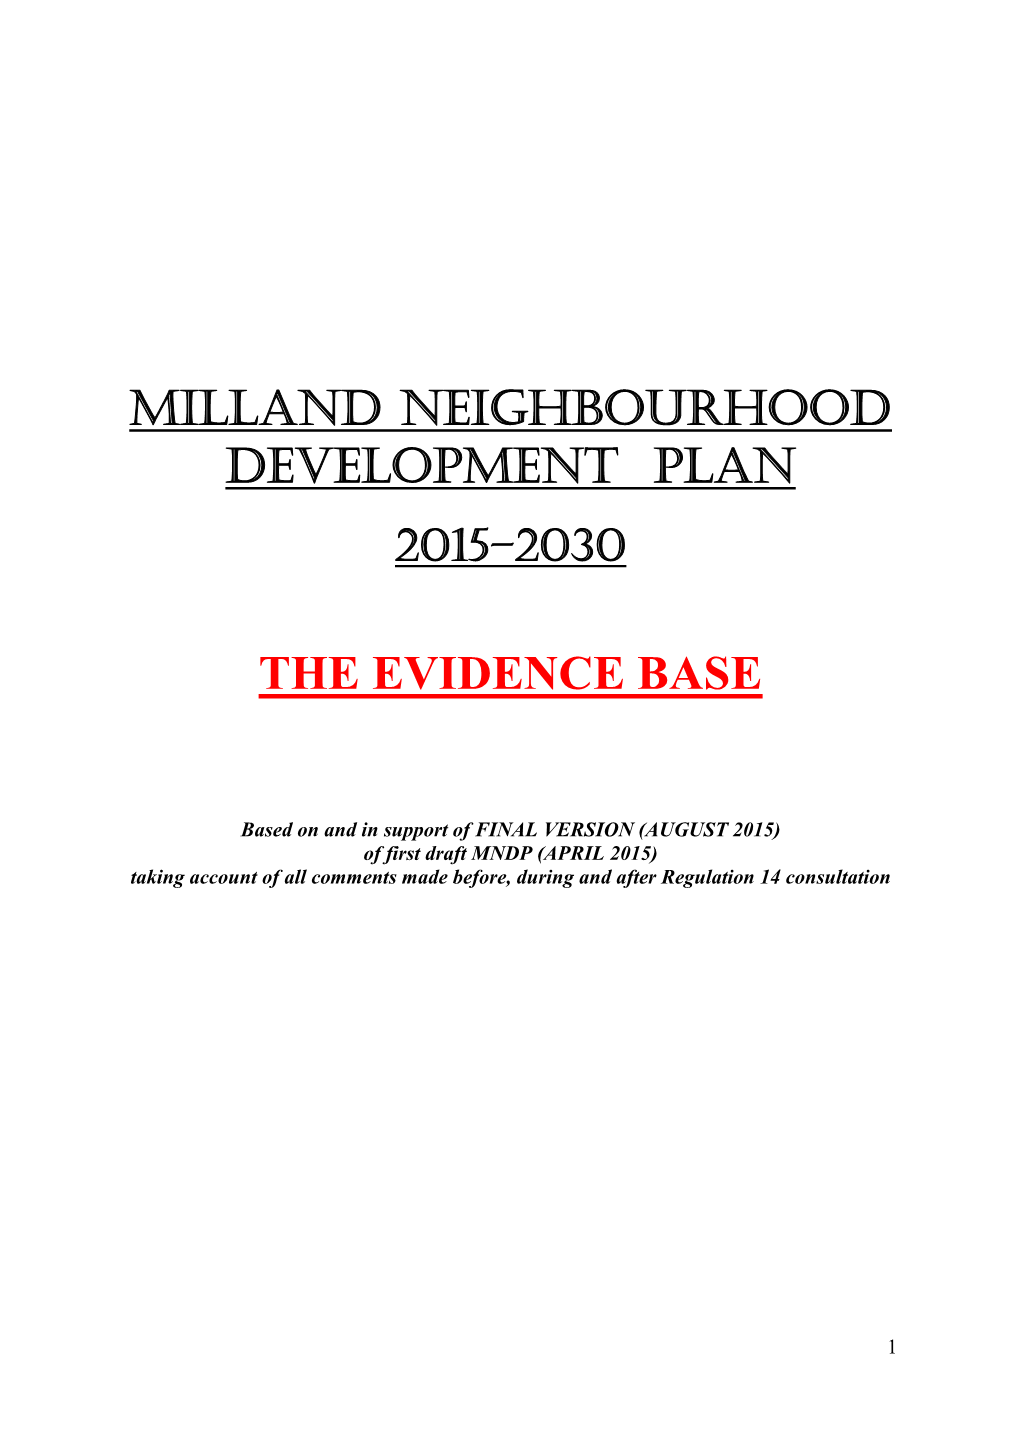 Milland Neighbourhood Development Plan The